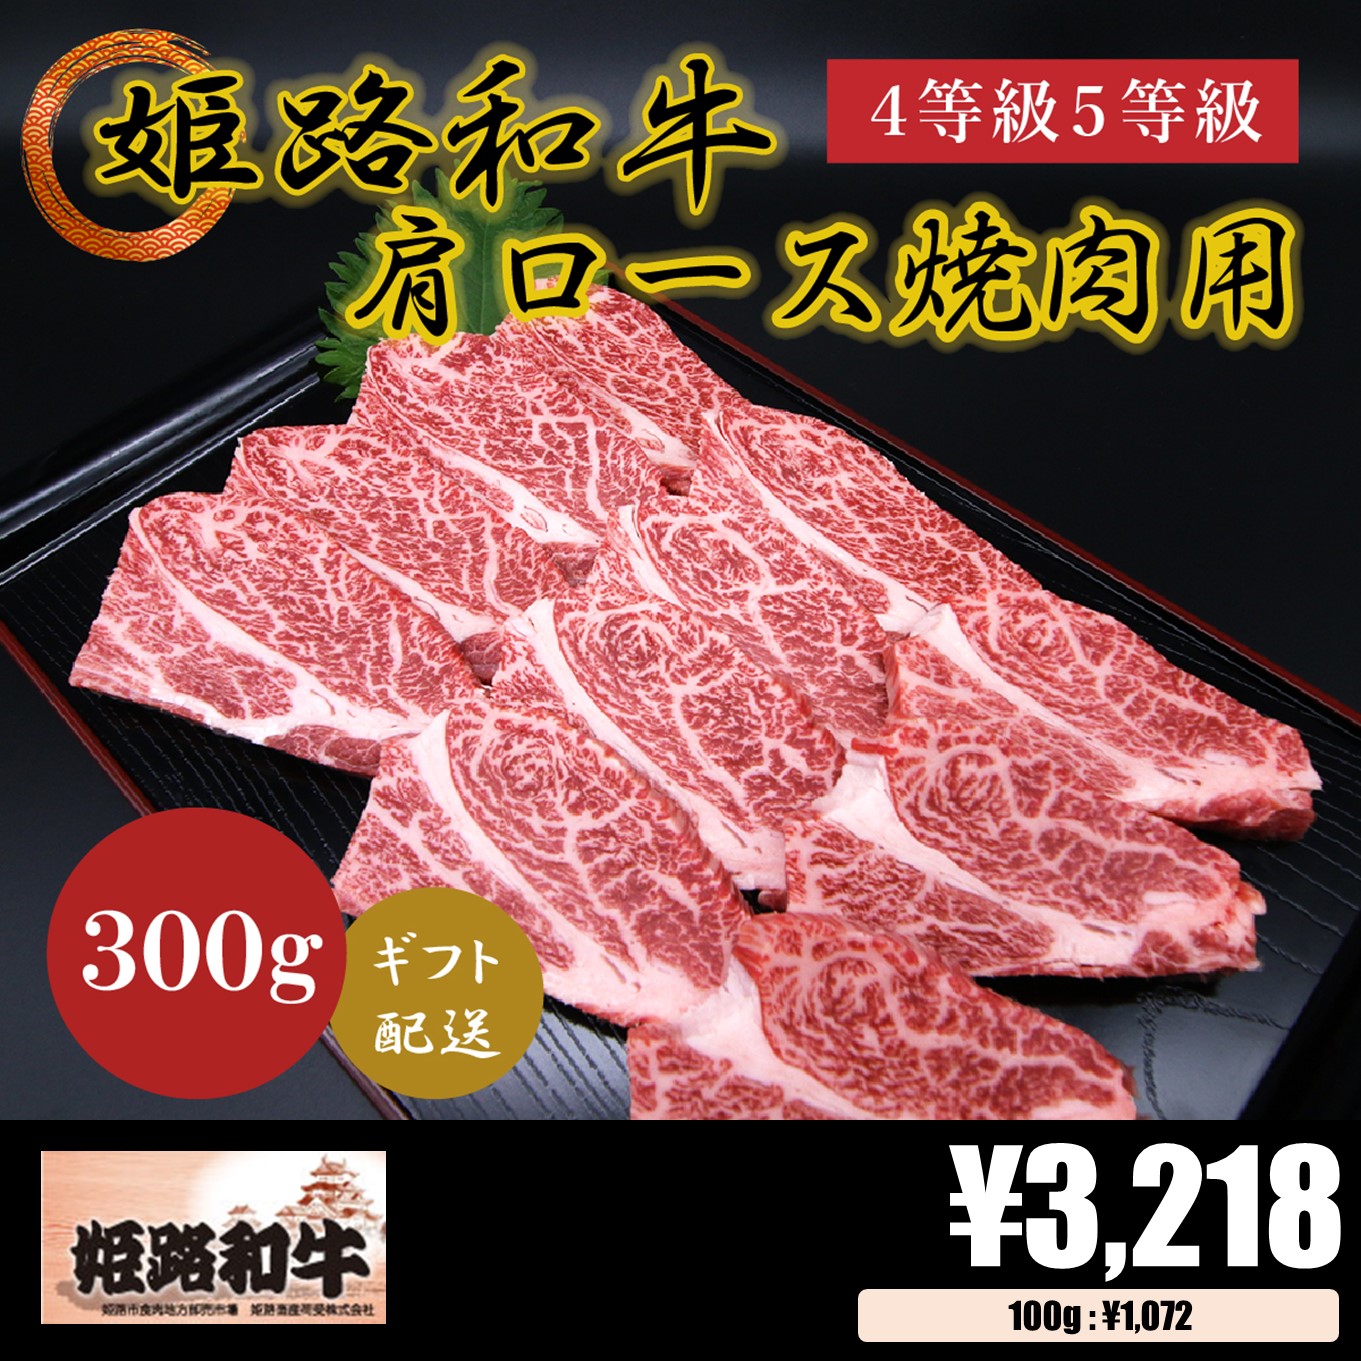 【お肉 ギフト】黒毛和牛 姫路和牛 4等級5等級 肩ロース 焼肉用300g①